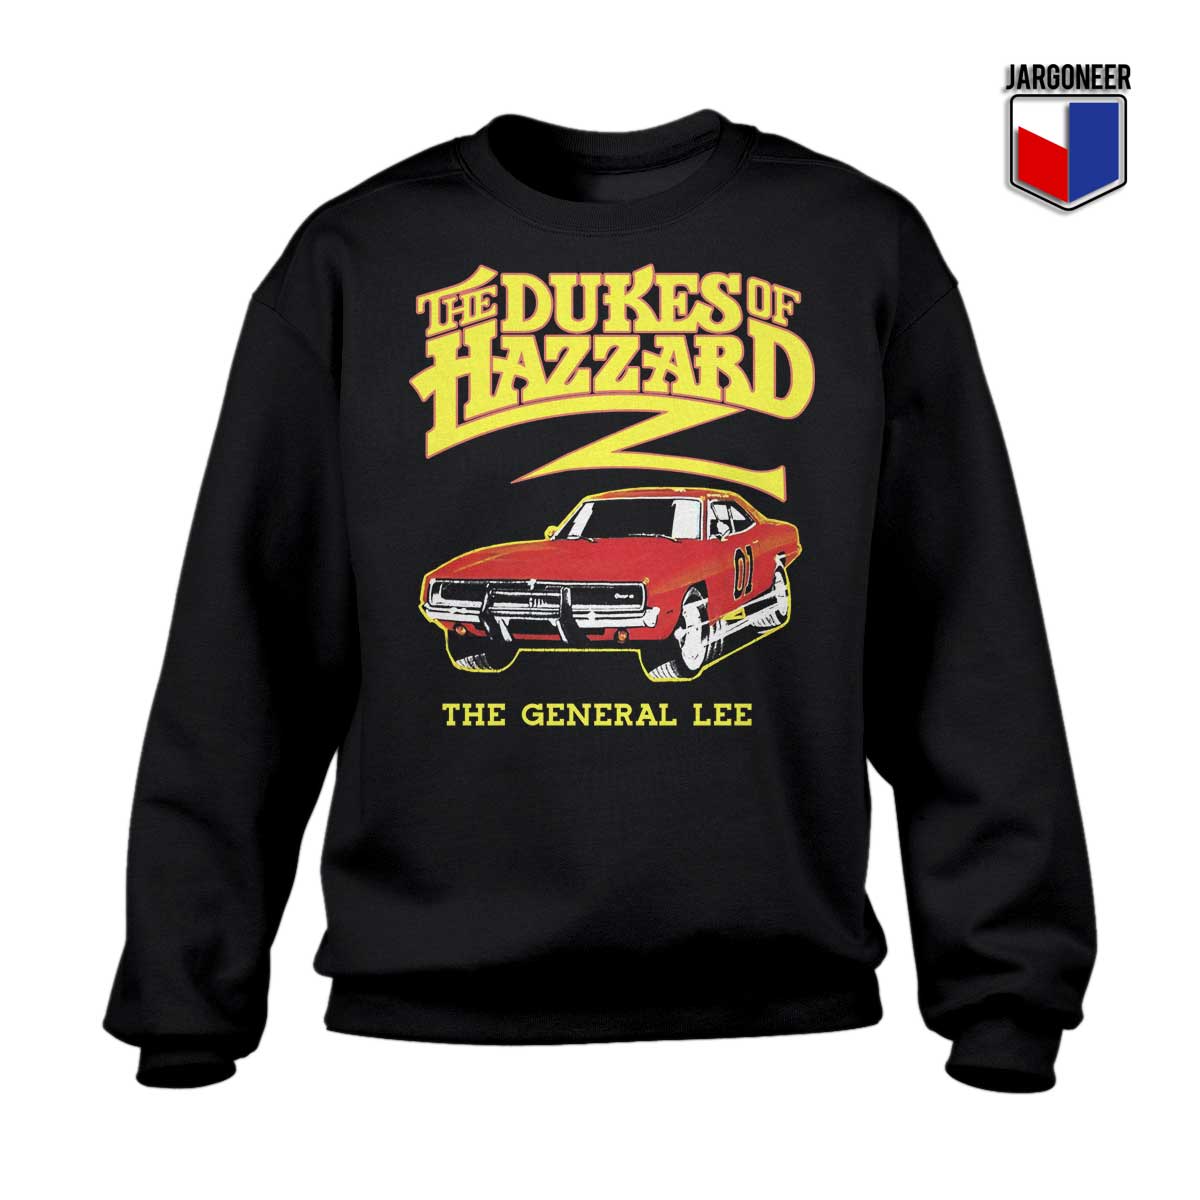 The Dukes Of Hazzard Sweatshirt - Shop Unique Graphic Cool Shirt Designs